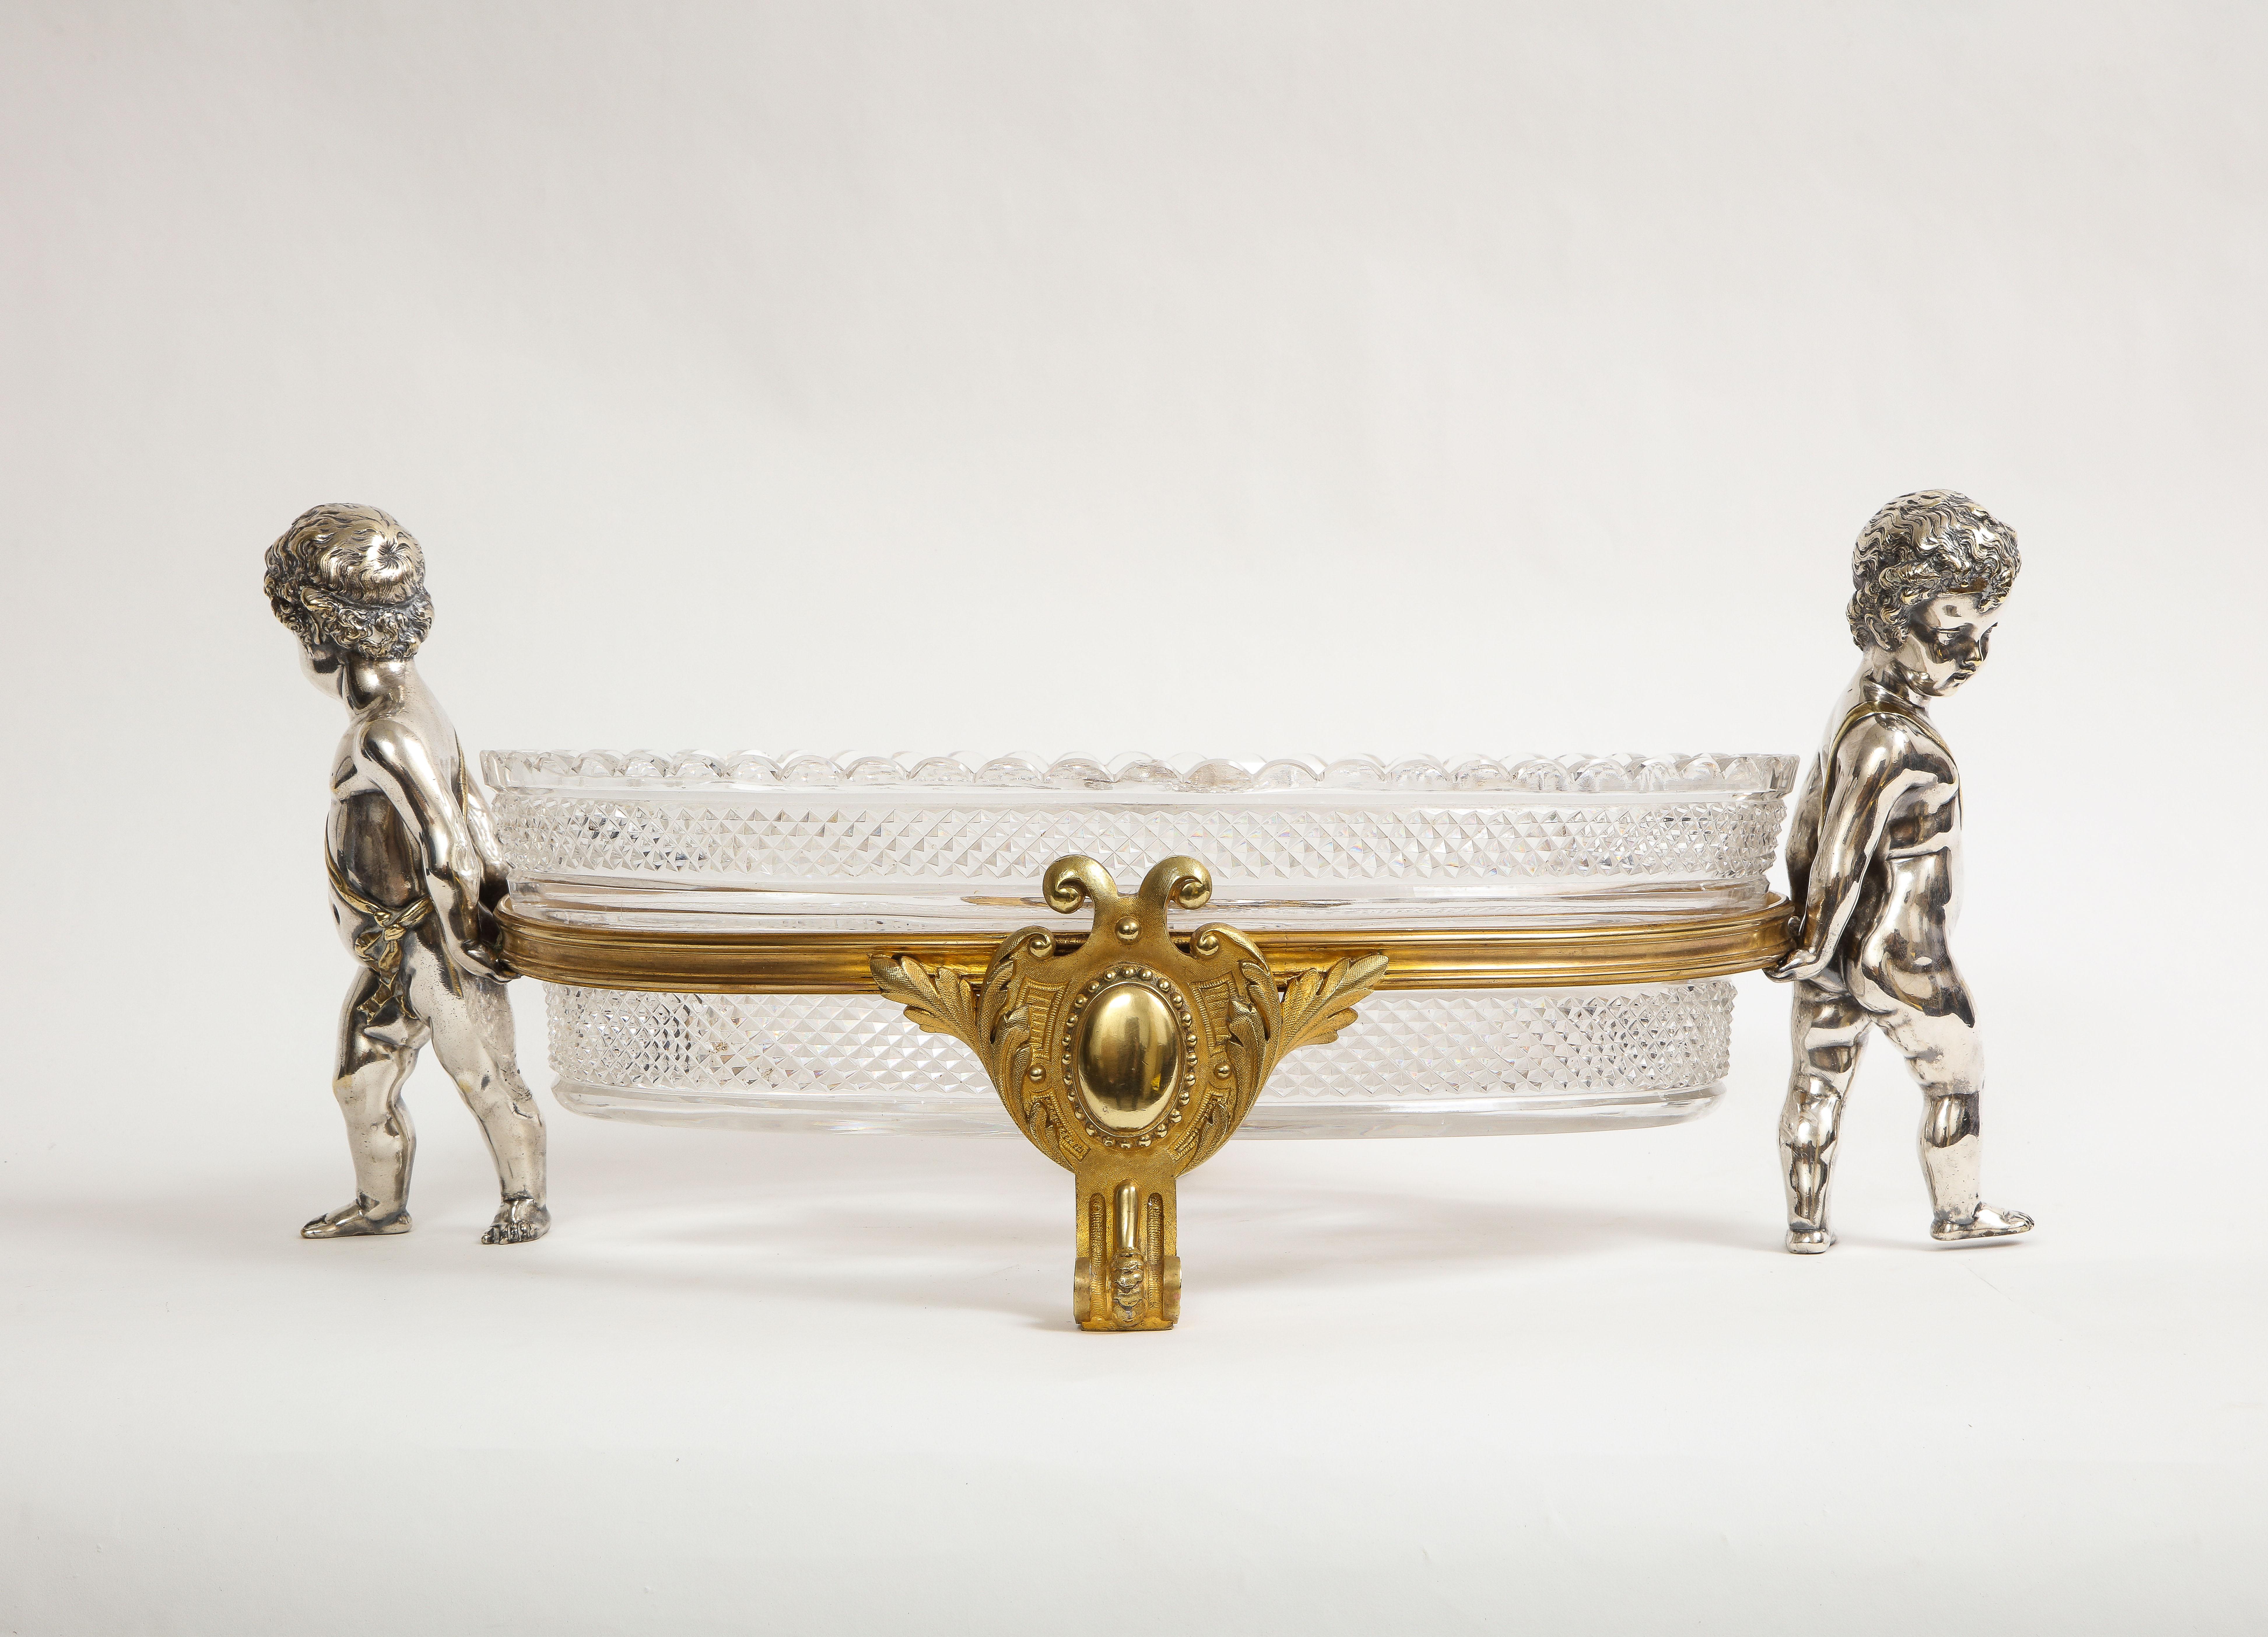 Grand centre de table en cristal de style Louis XVI, monté sur des putti en bronze doré et argenté, marqué Baccarat, datant des années 1800. La pièce centrale en cristal est soutenue par deux putti en bronze argenté qui portent des bandes autour du